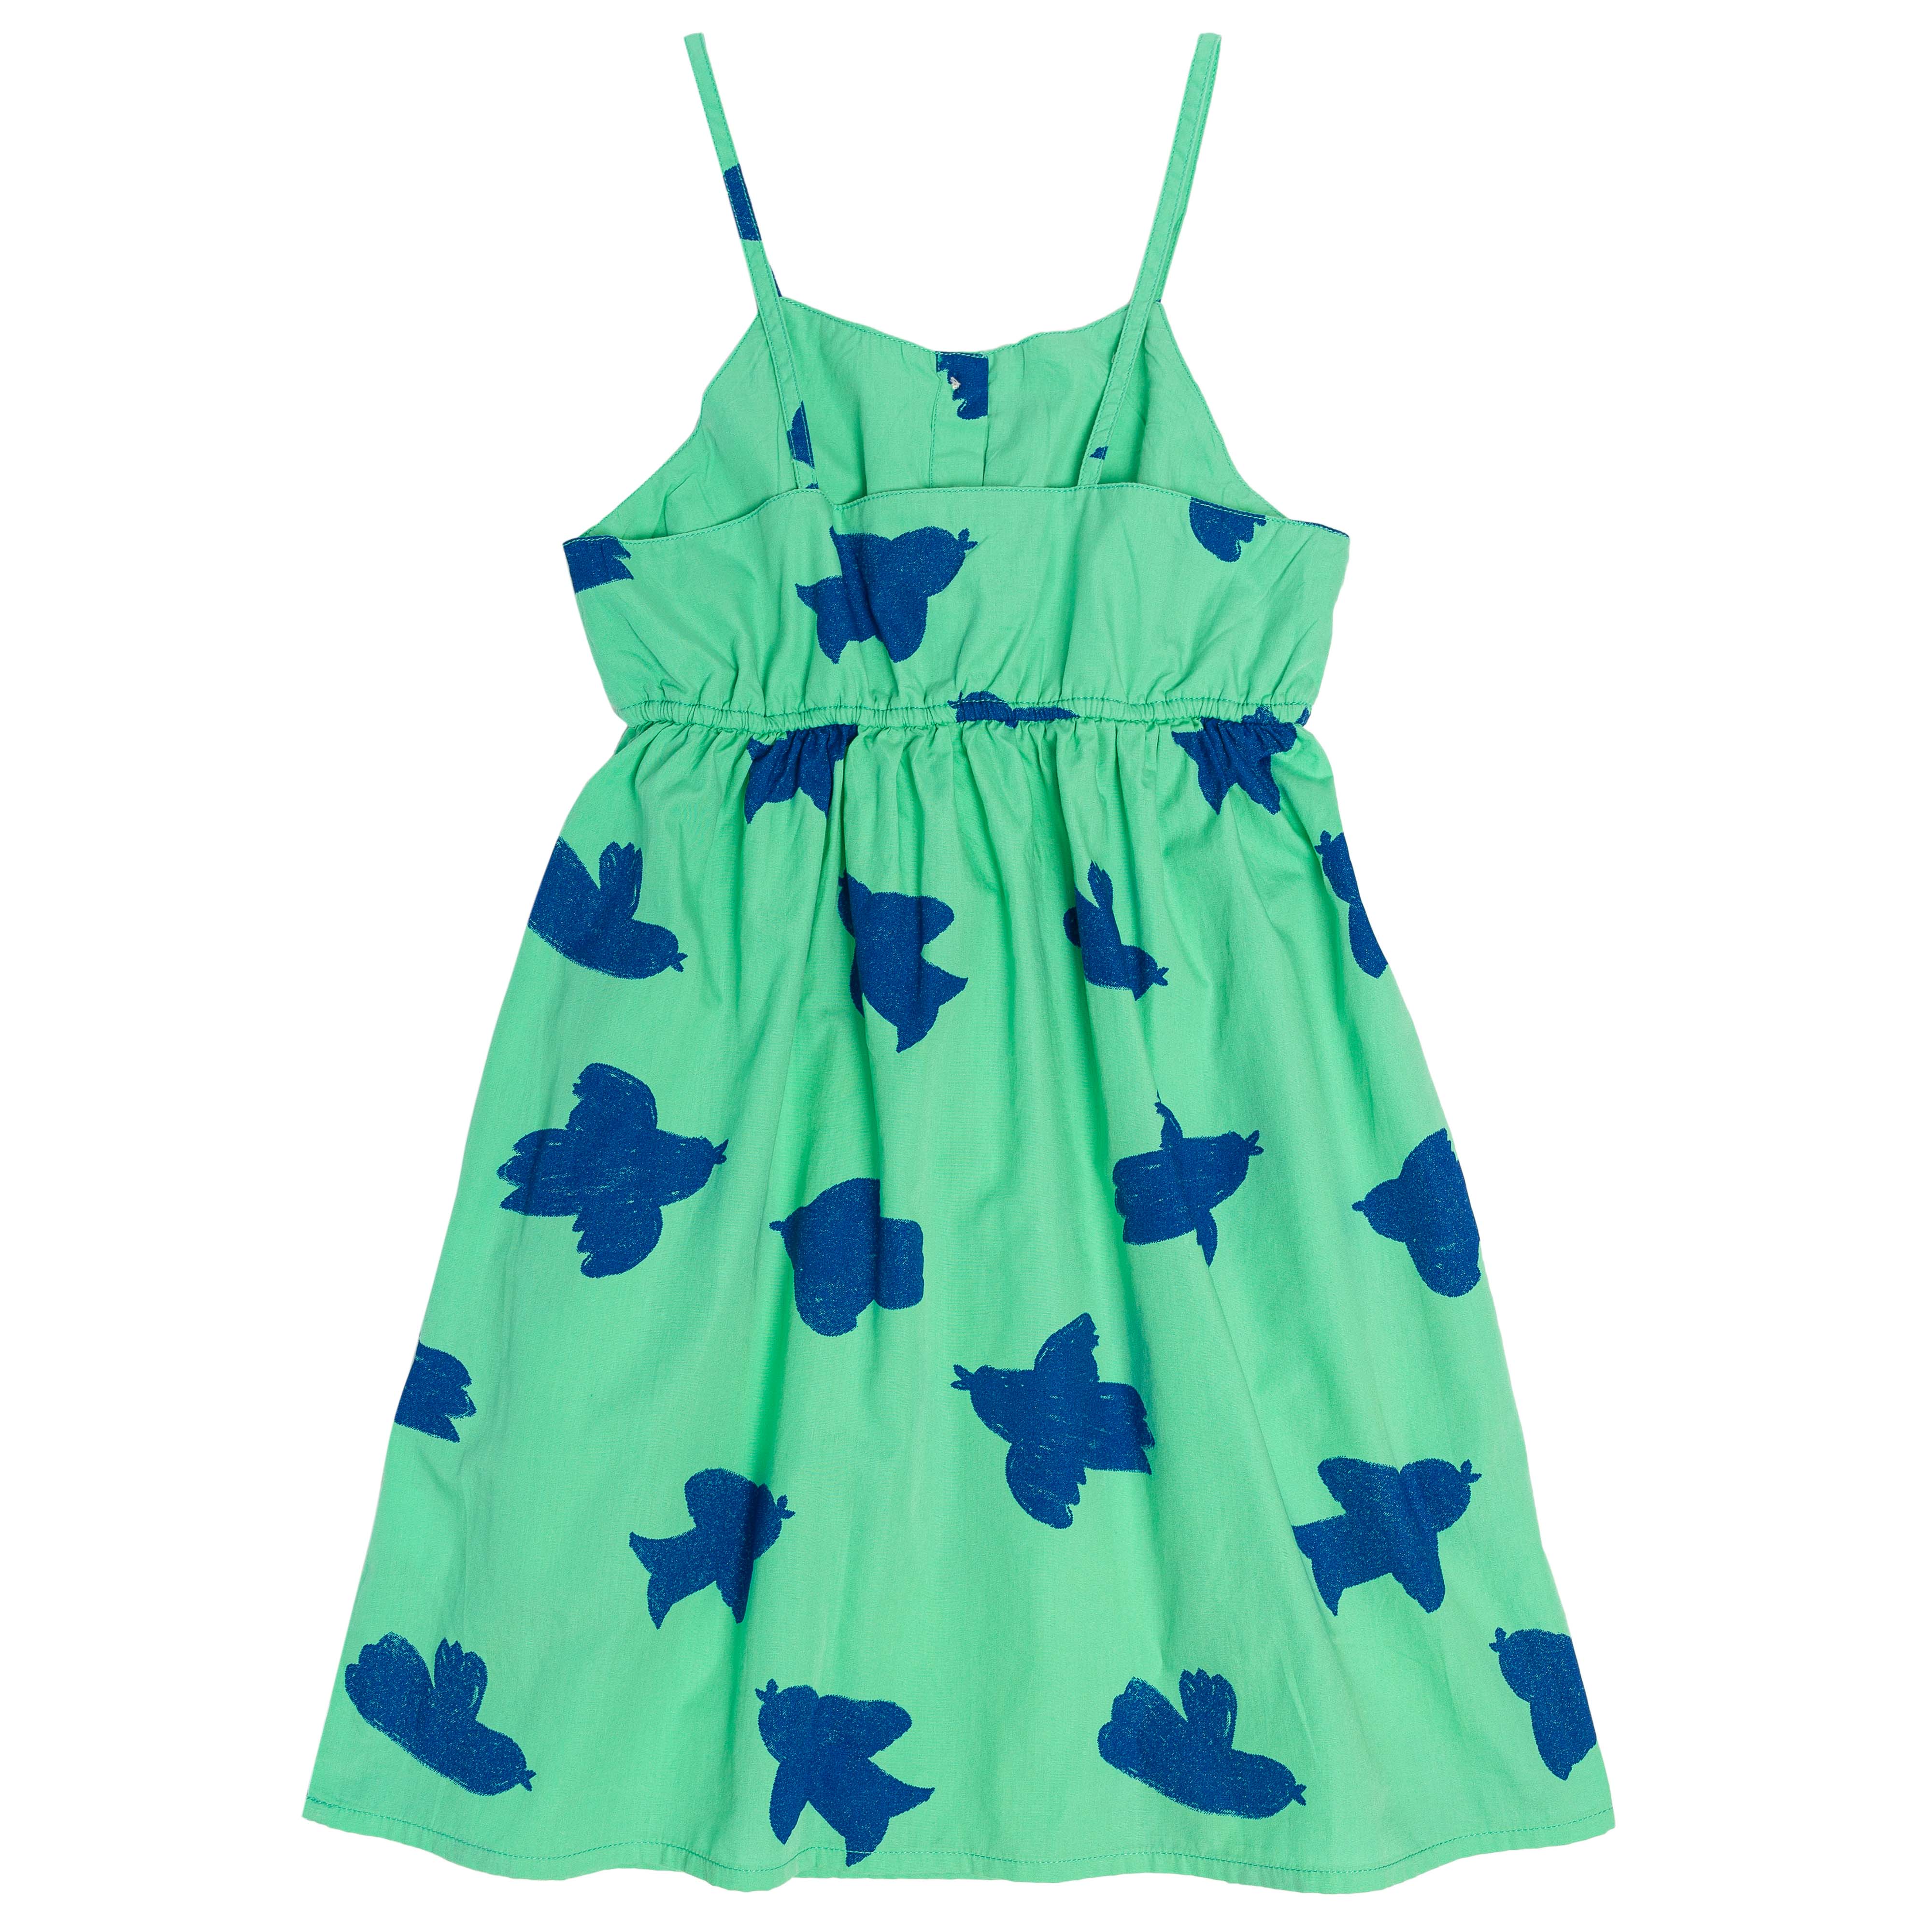 robe à bretelles boutonnée sur le haut devant, en coton bio, vêtement mixte unisexe style vintage, imprimé vert motif oiseaux bleus, vue verso